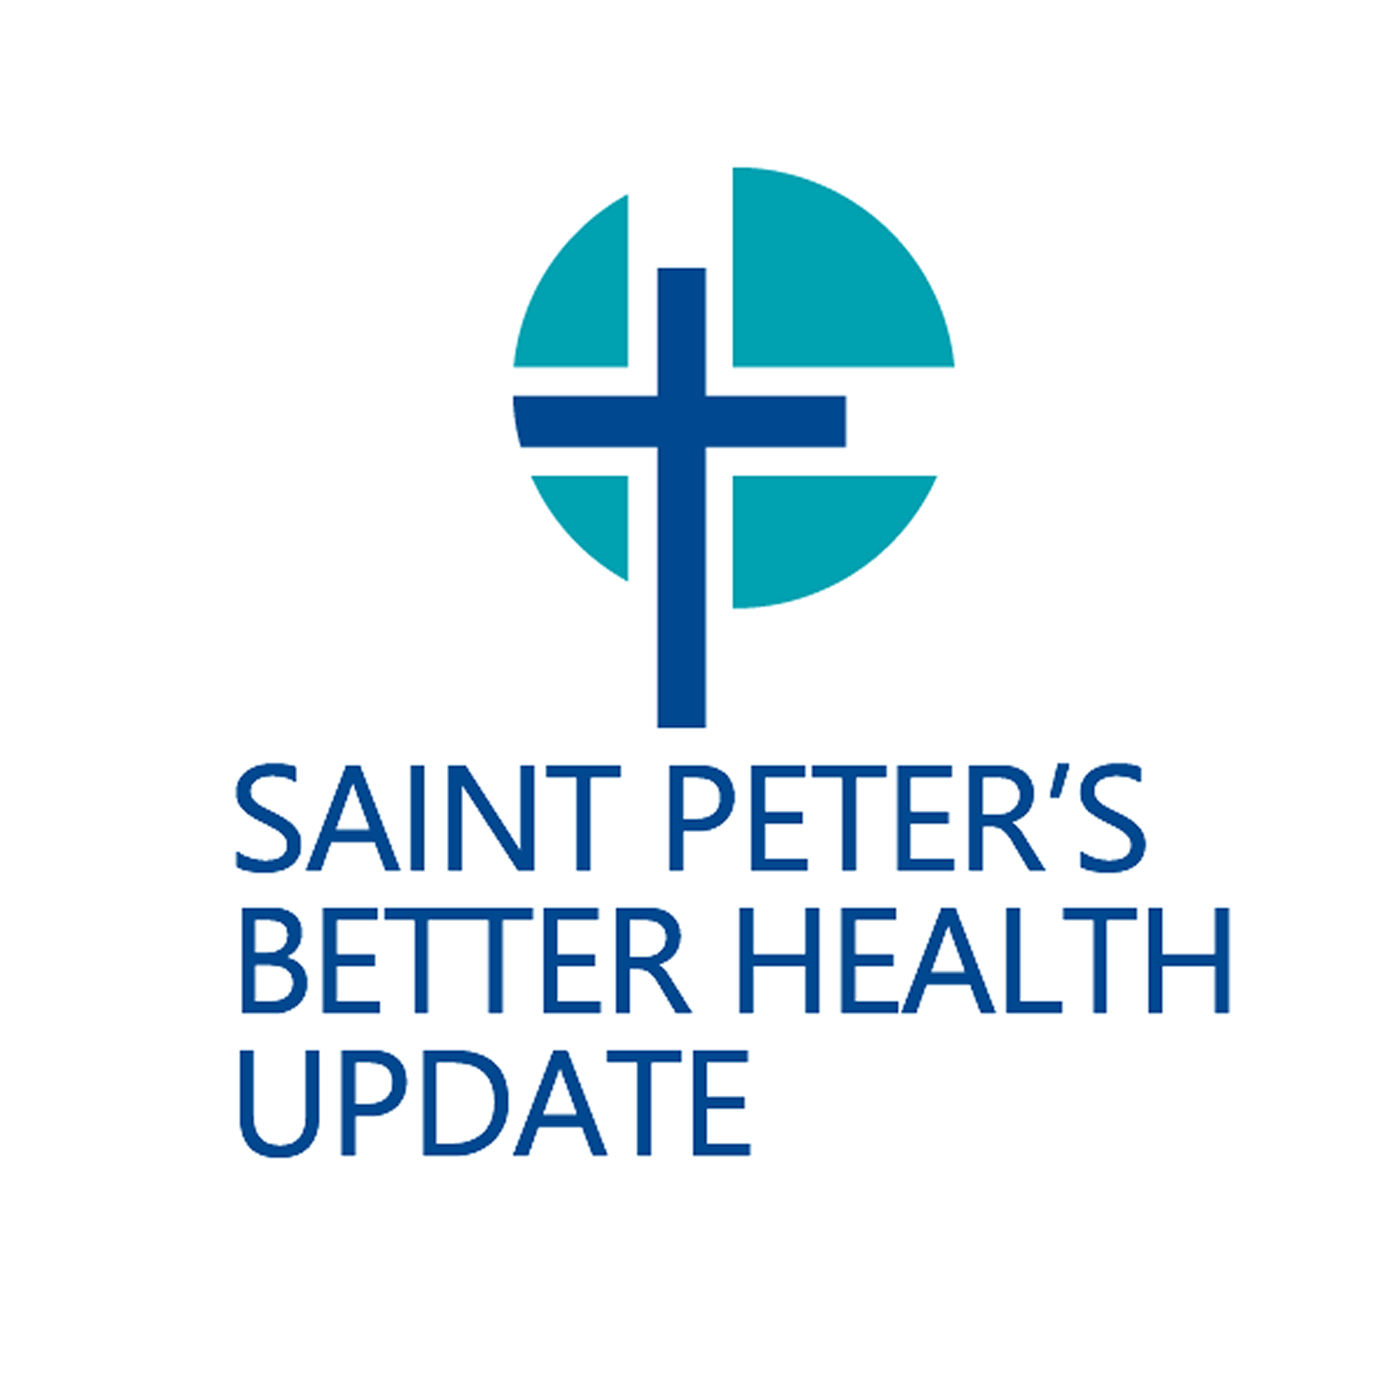 Saint Peter’s Better Health Update